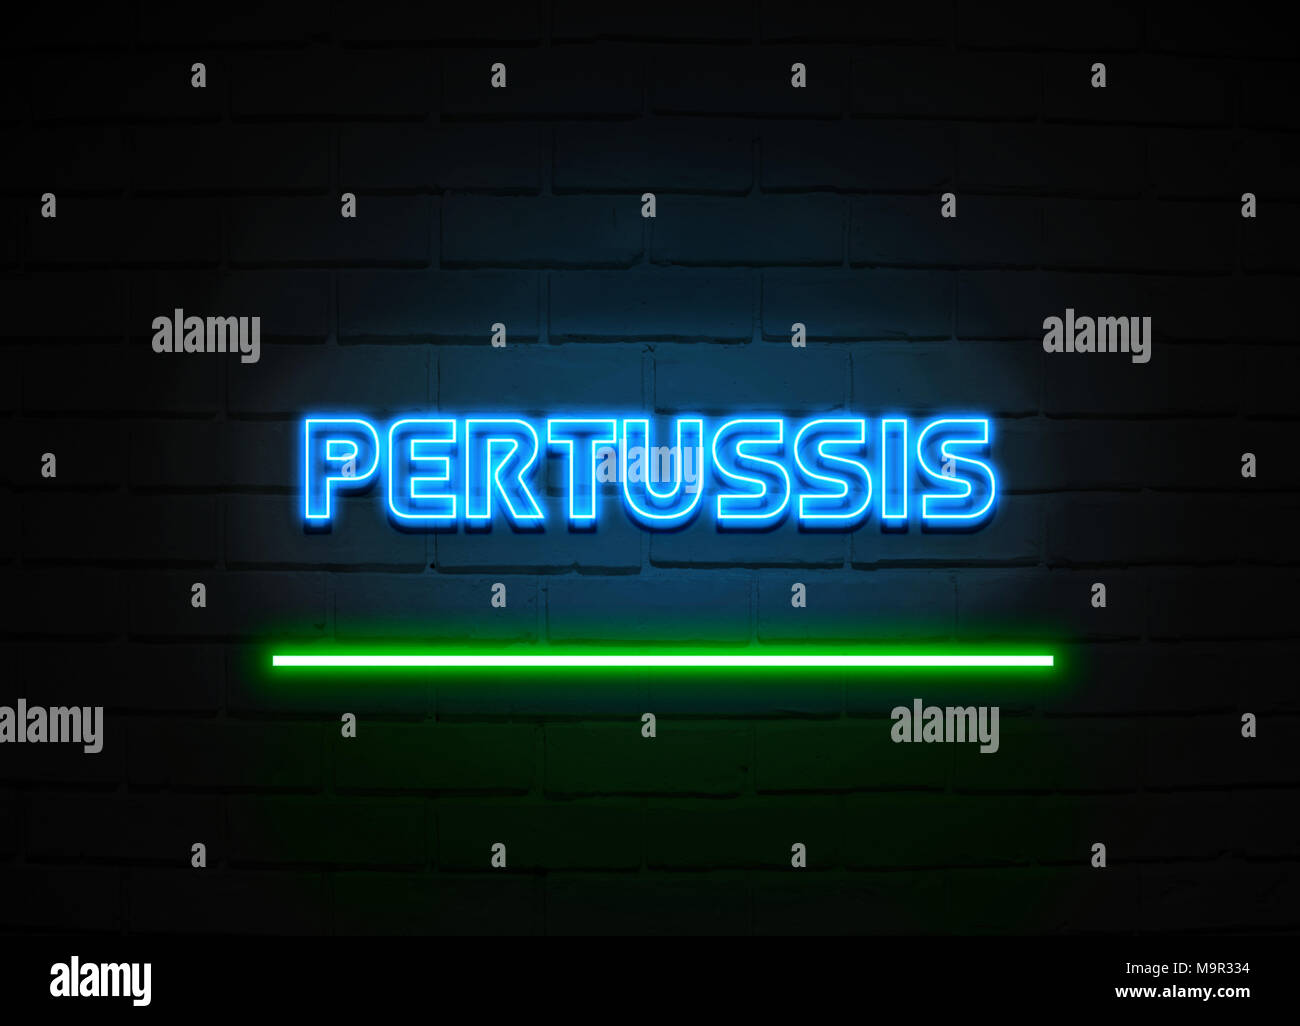 Pertussis Leuchtreklame - glühende Leuchtreklame auf brickwall Wand - 3D-Royalty Free Stock Illustration dargestellt. Stockfoto